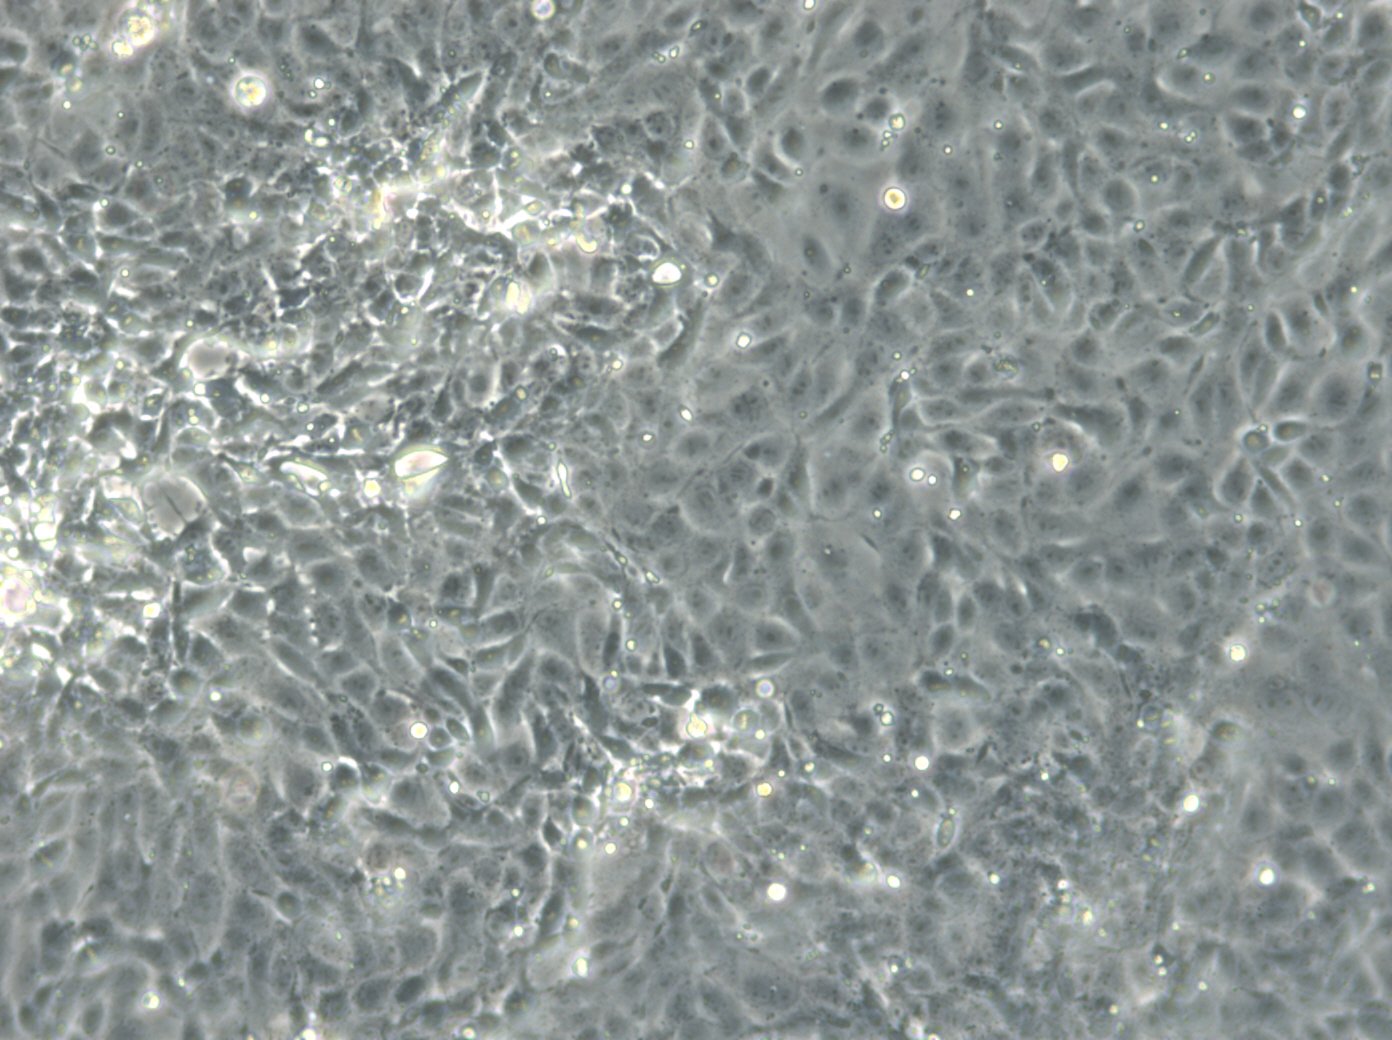 DSL-6B-C2 Cells